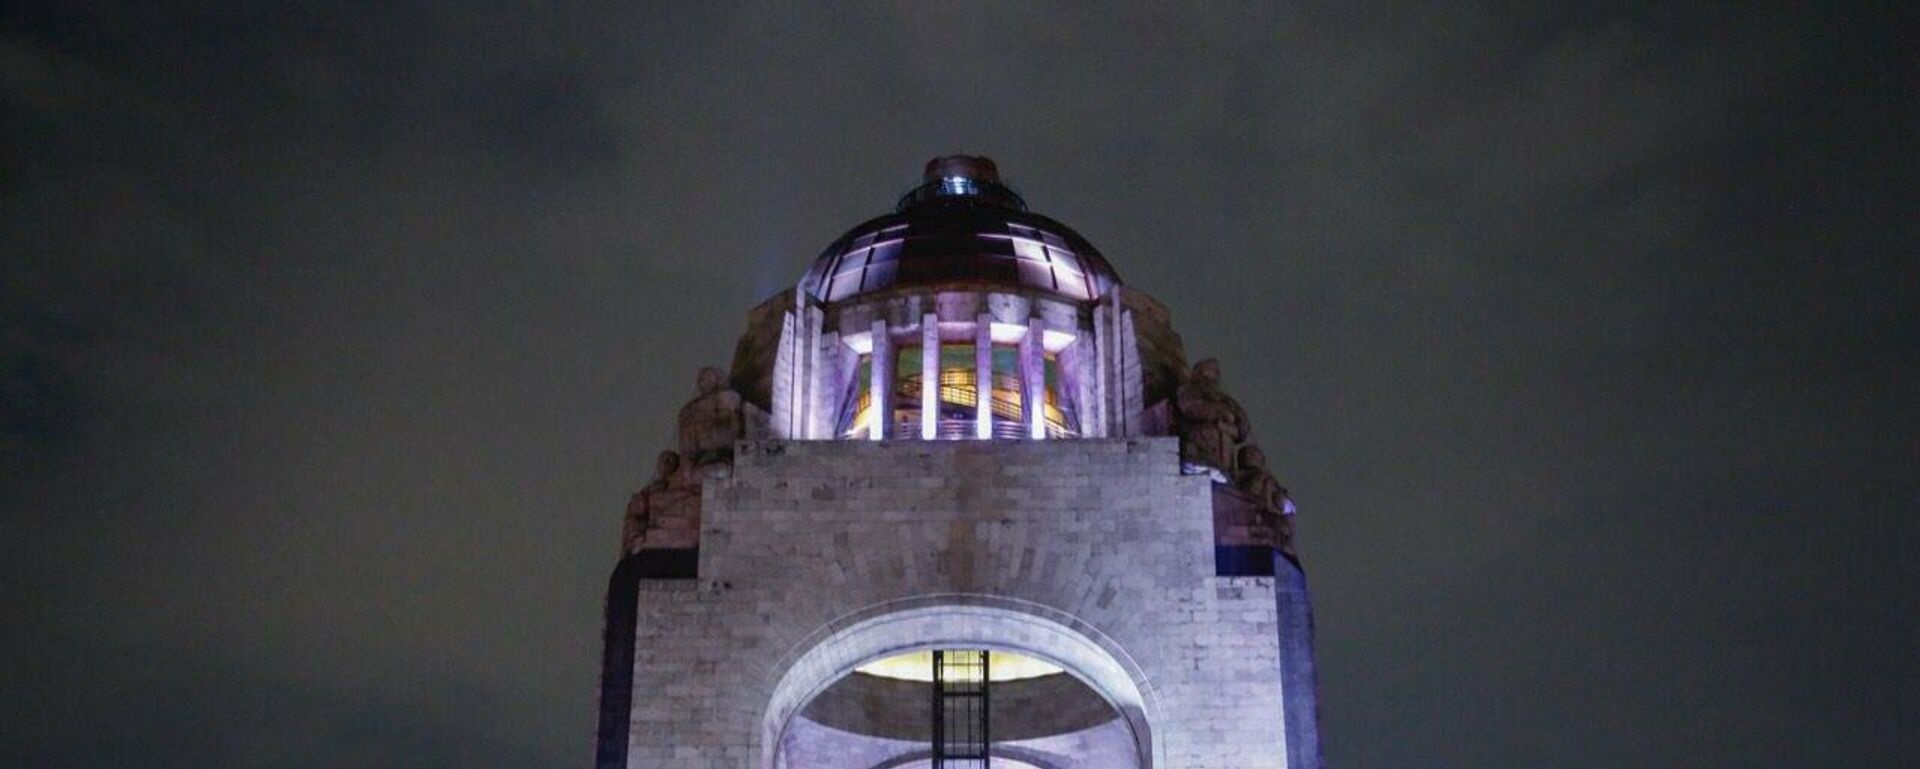 Edificio se iluminan de blanco en la Ciudad de México - Sputnik Mundo, 1920, 29.10.2021